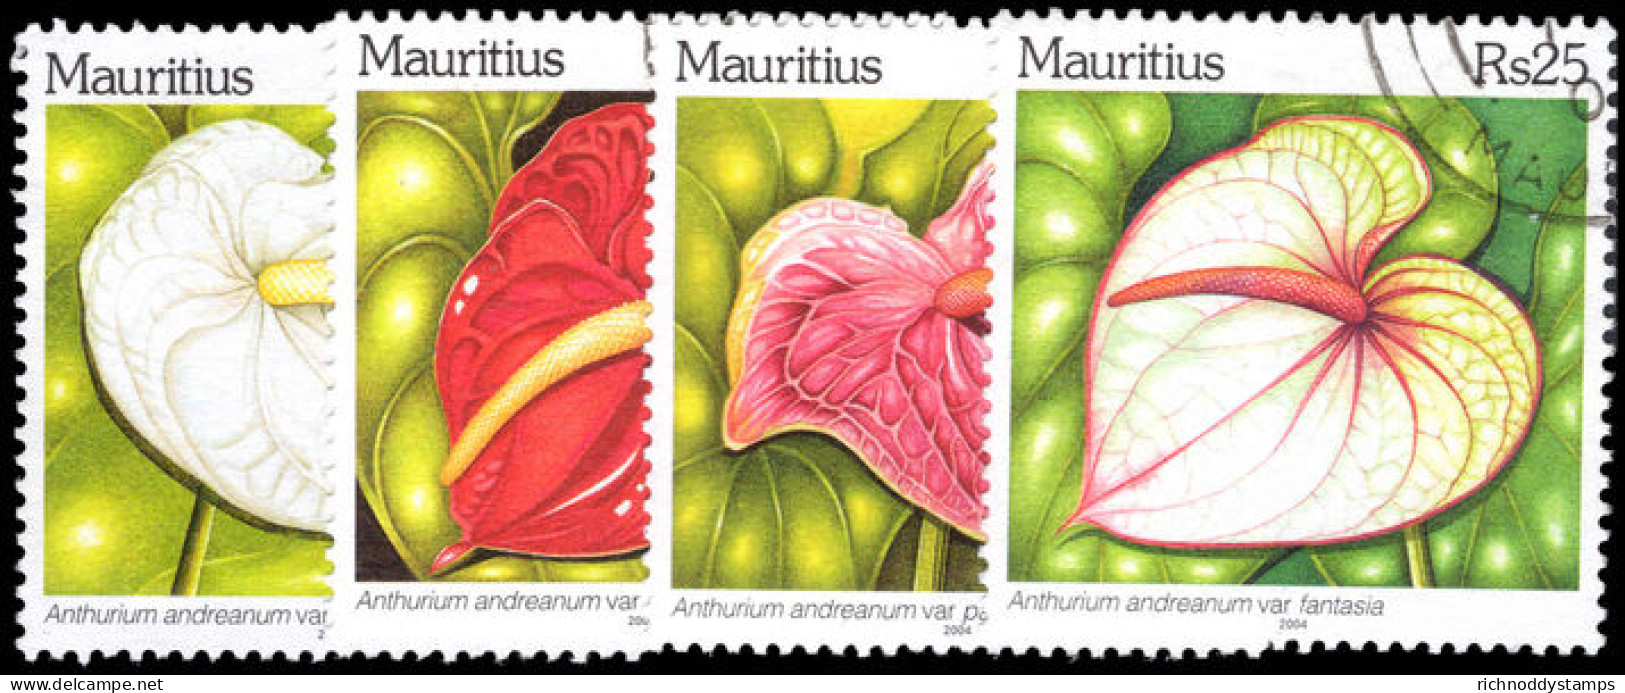 Mauritius 2004 Anthurium Species Fine Used. - Maurice (1968-...)